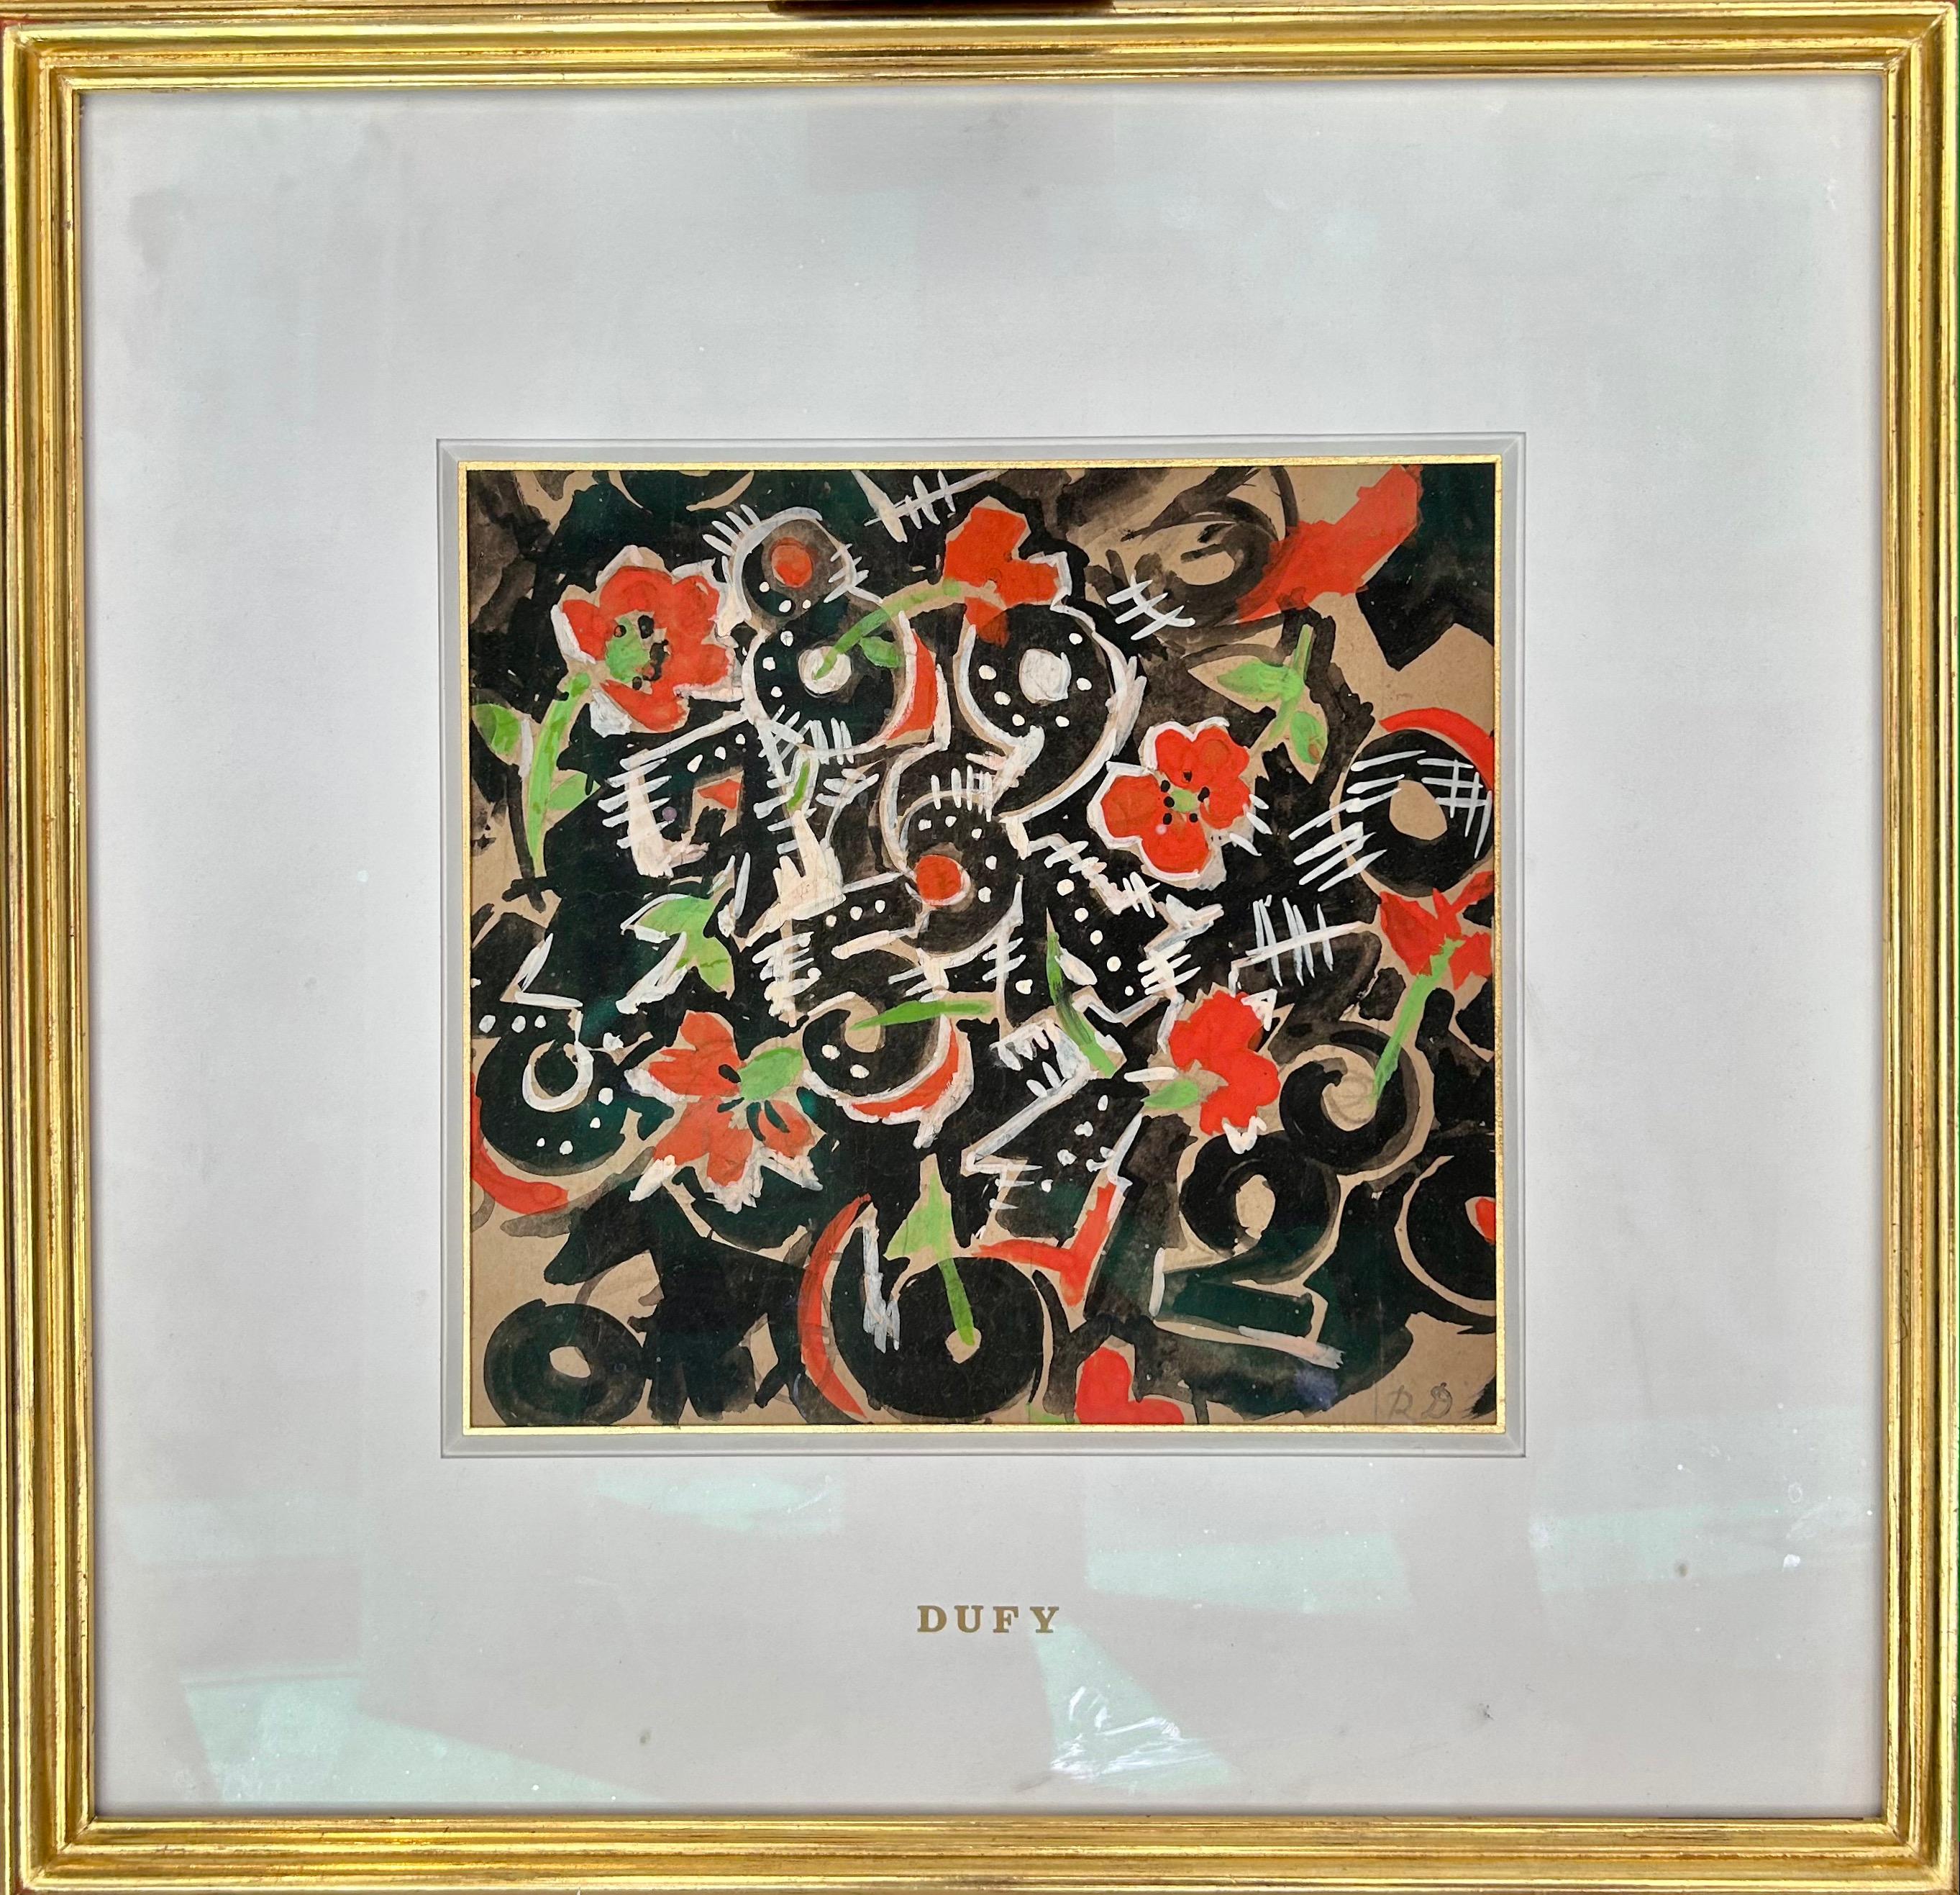 Raoul Dufy (1877-1953)
Gouache on paper
17 1/3 x 17 1/3 in. (with frame)
Monogram lower right 

Raoul Dufy est un peintre et décorateur français de la première moitié du XXe siècle. Il naît au Havre (Seine-Maritime) le 3 juin 1877, et meurt à